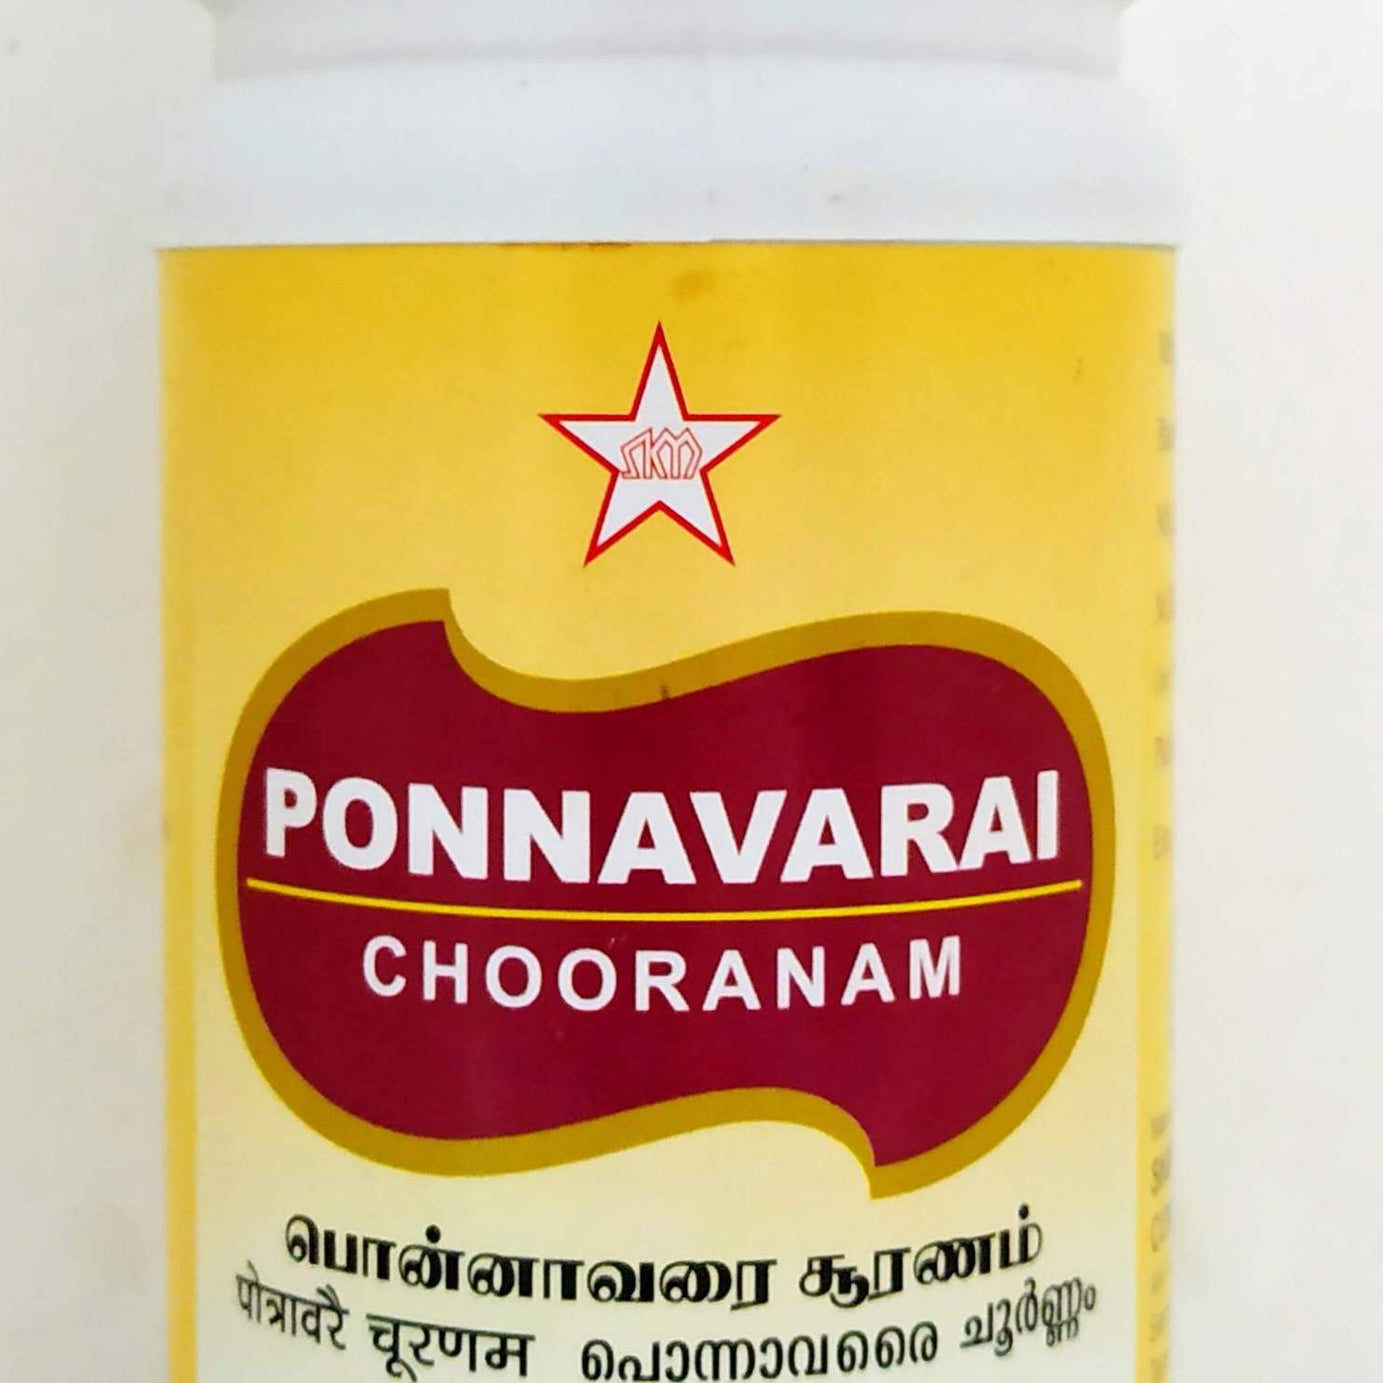 Shop Ponnavarai Chooranam 100gm at price 155.00 from SKM Online - Ayush Care